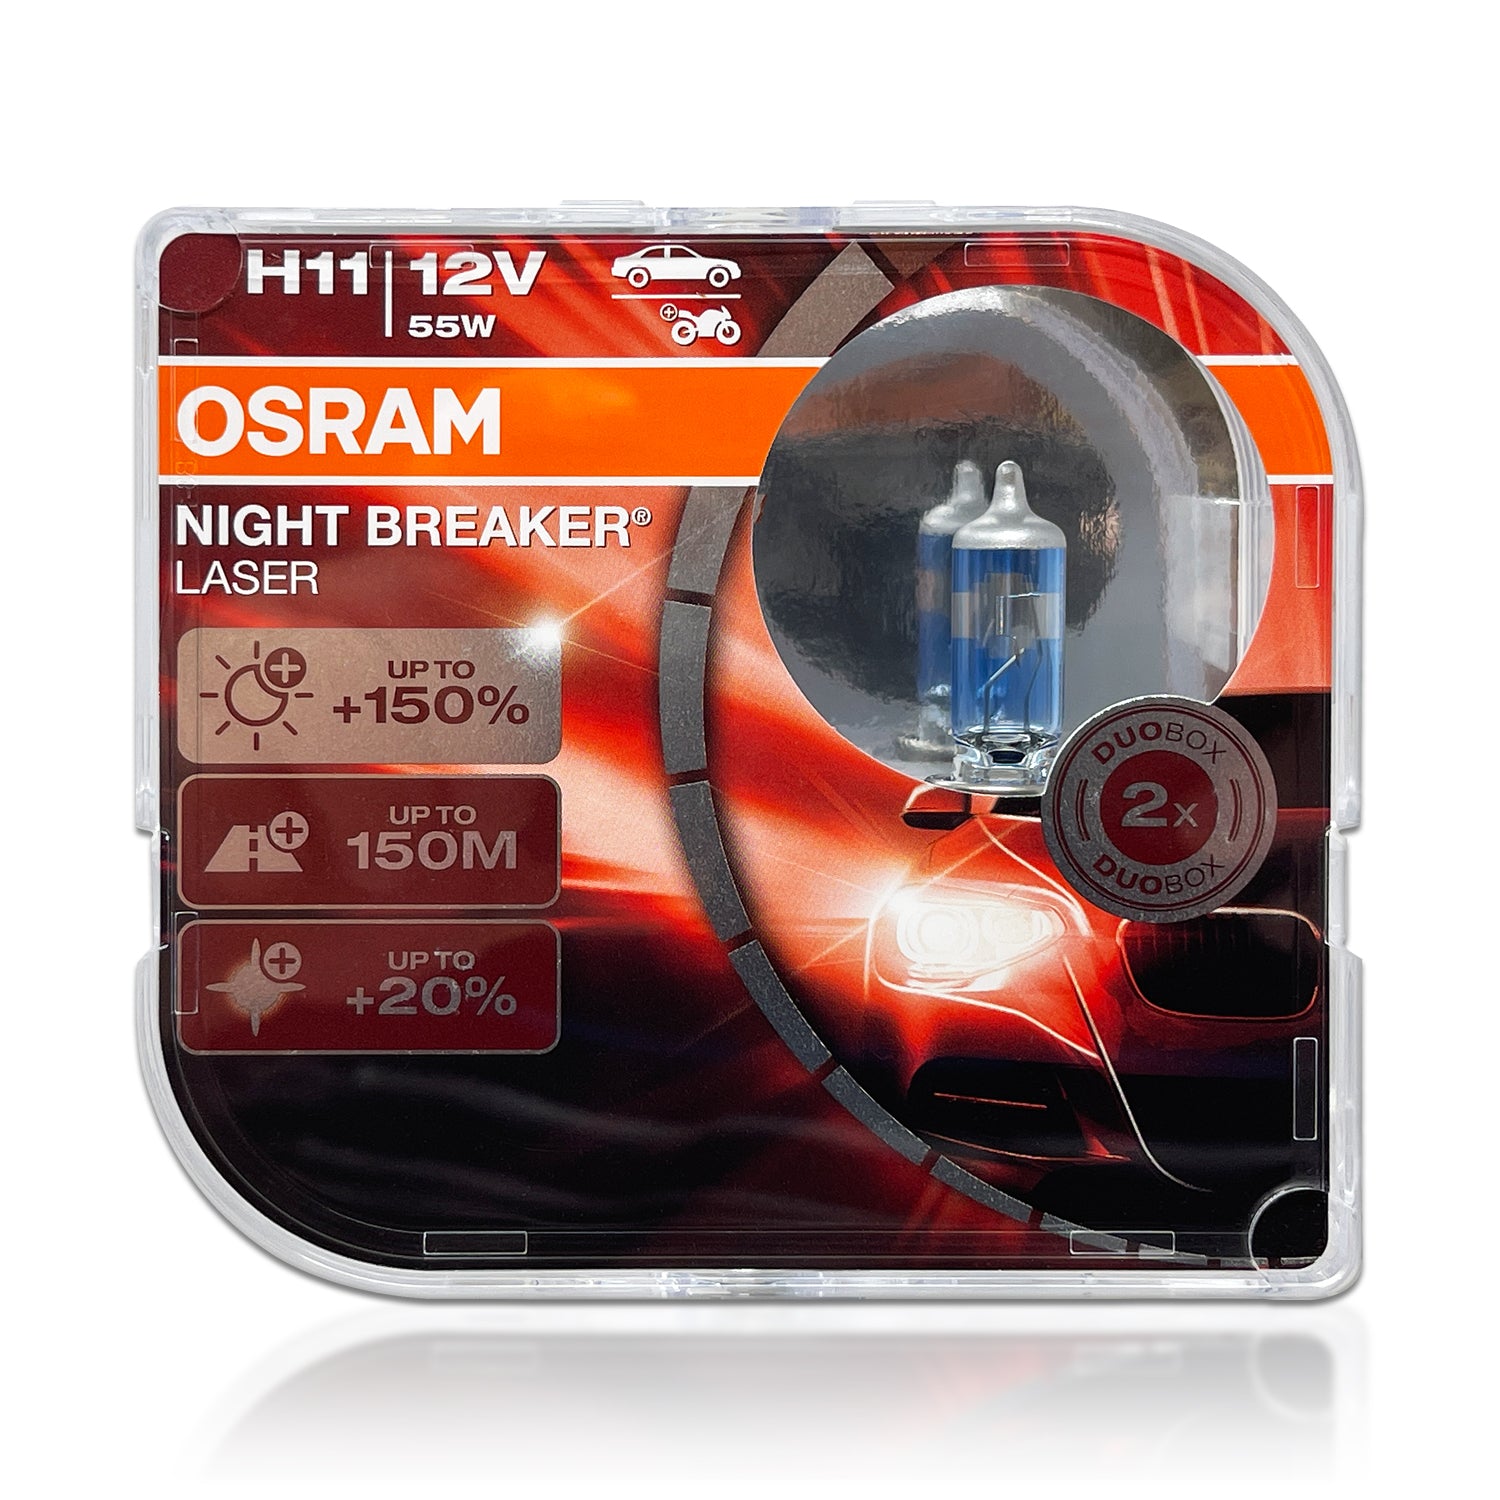 OSRAM Original H11 Night Breaker Laser Next Generation 12V 55W 3700K Car  Headlight Auto Fog Lamps +150 Brightness 64211NL(2 PCS)